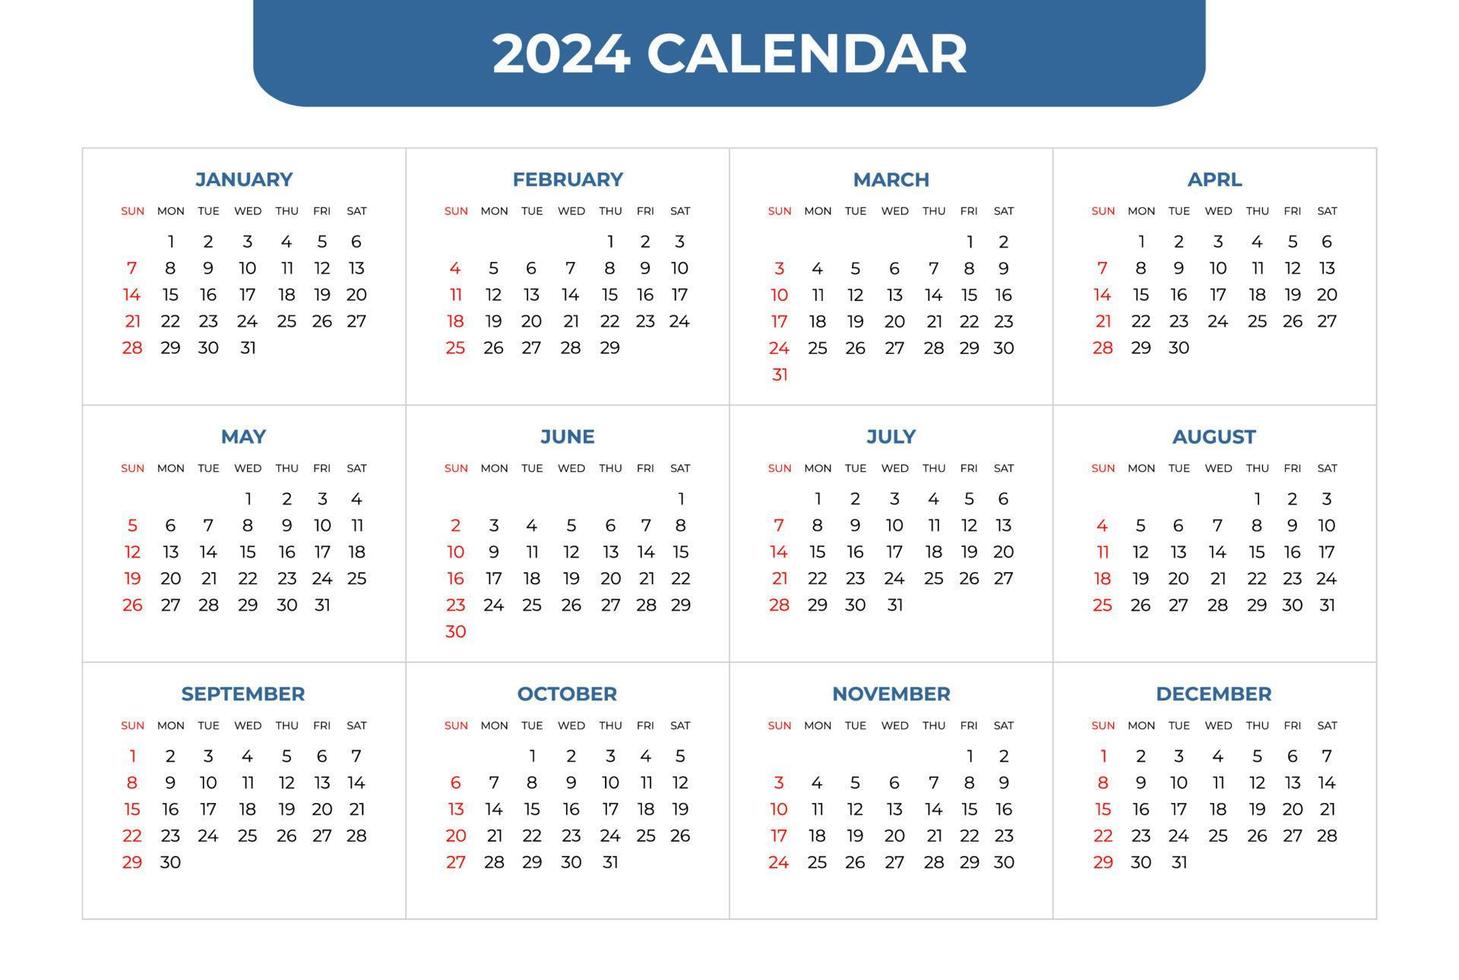 bureau calendrier 2024 modèle - 12 mois inclus. année calendrier 27874735  Art vectoriel chez Vecteezy